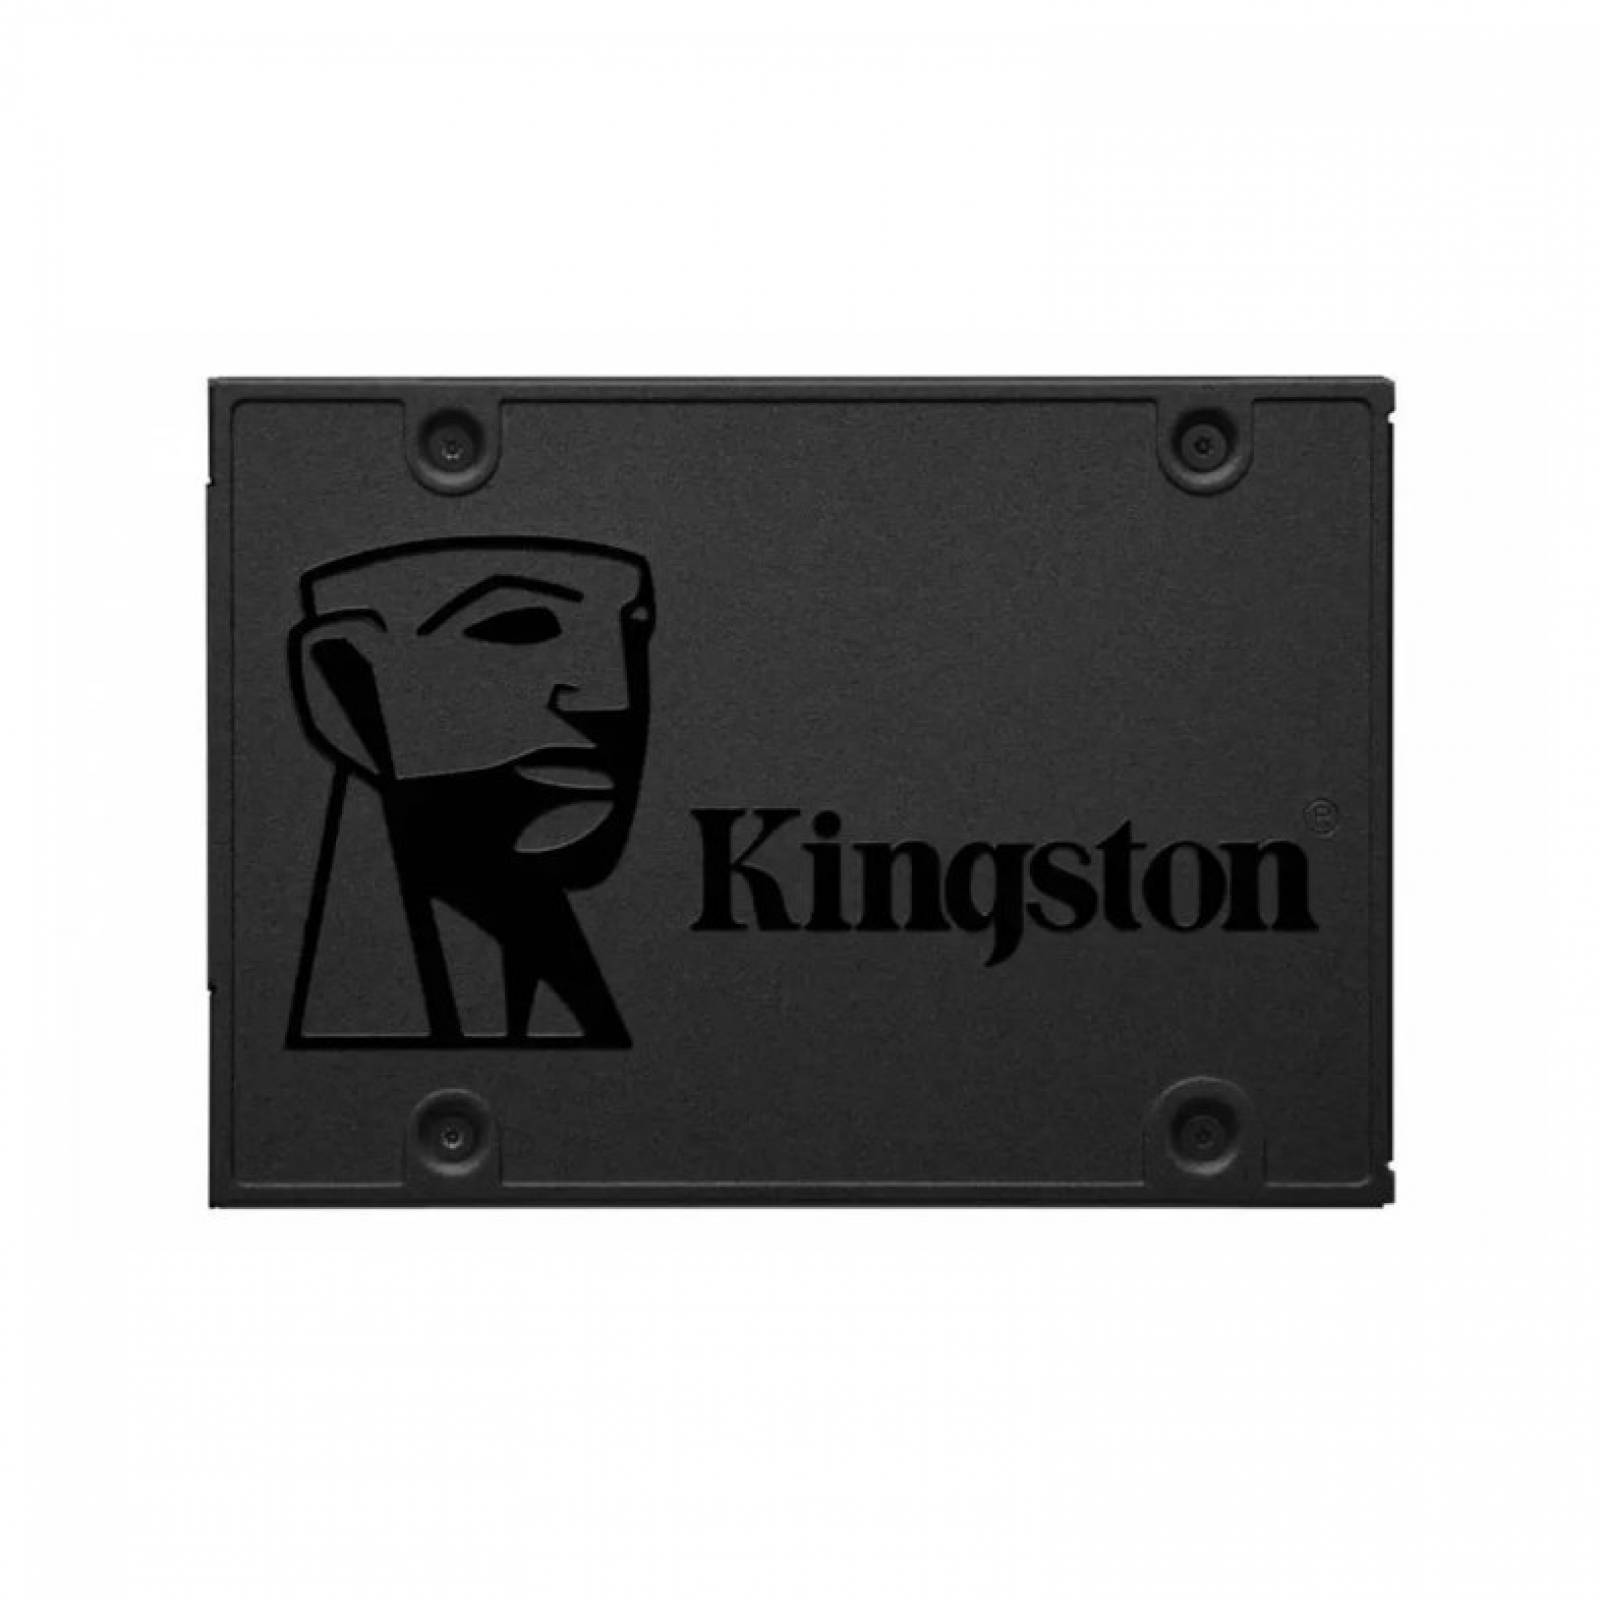 SSD Kingston A400 Disco Duro Solido 960 GB Negro SA400S37